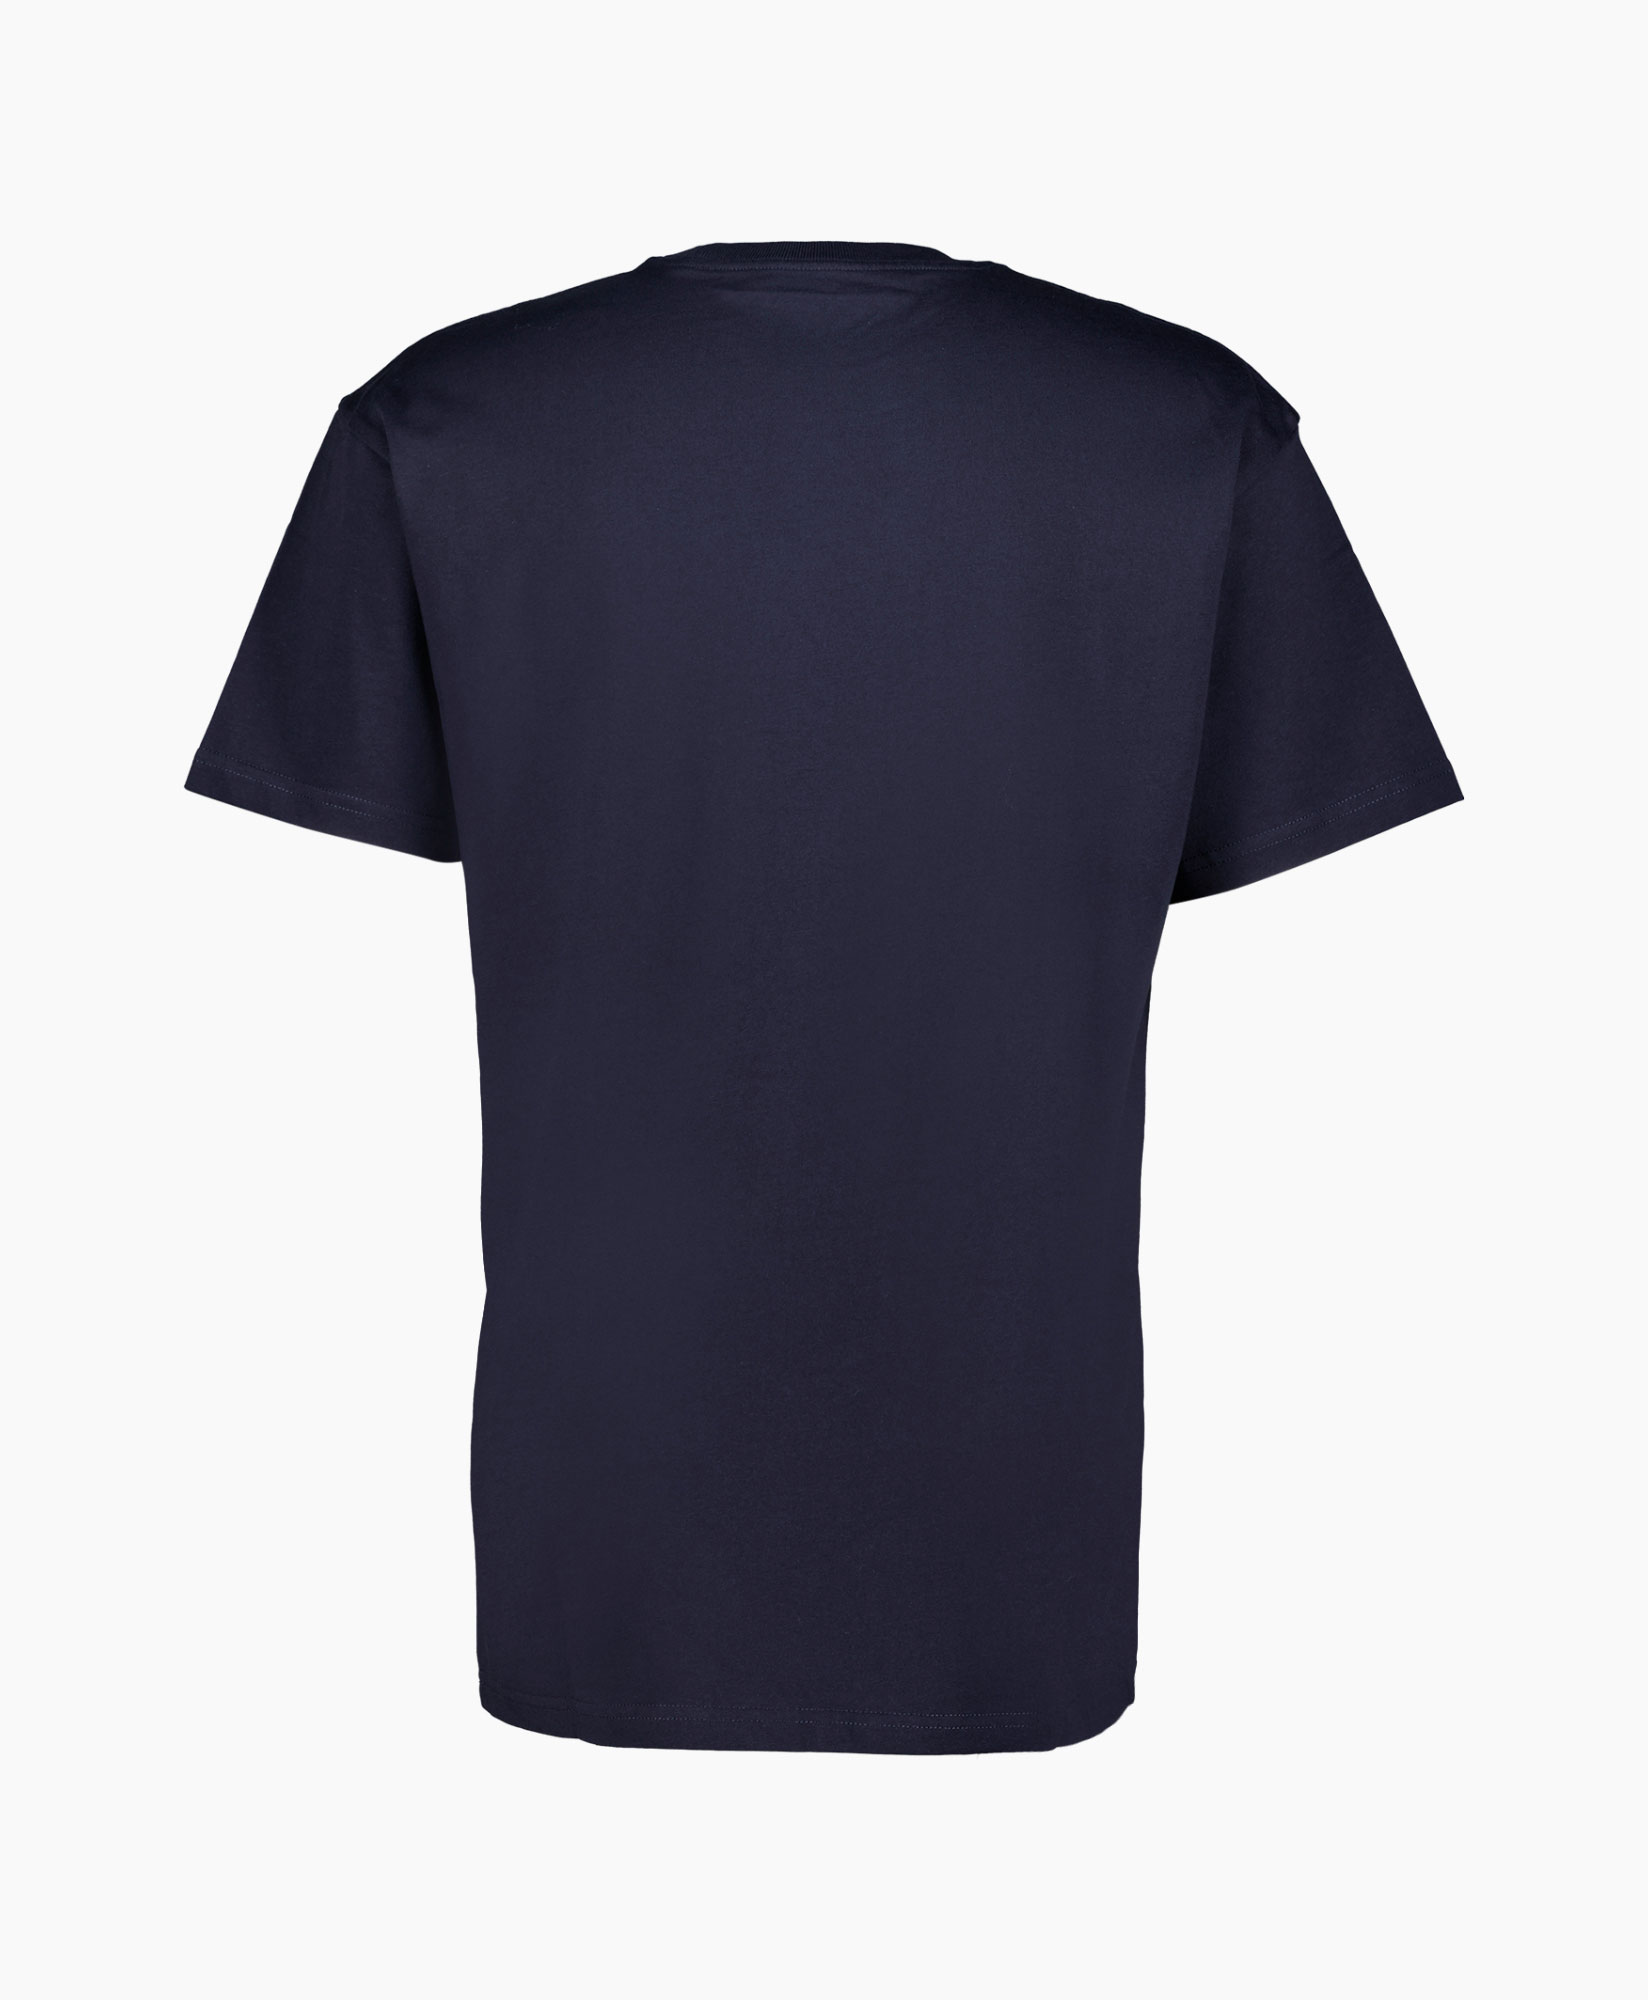 Carhartt Wip T-shirt Korte Mouw S/s Chase Donker Blauw